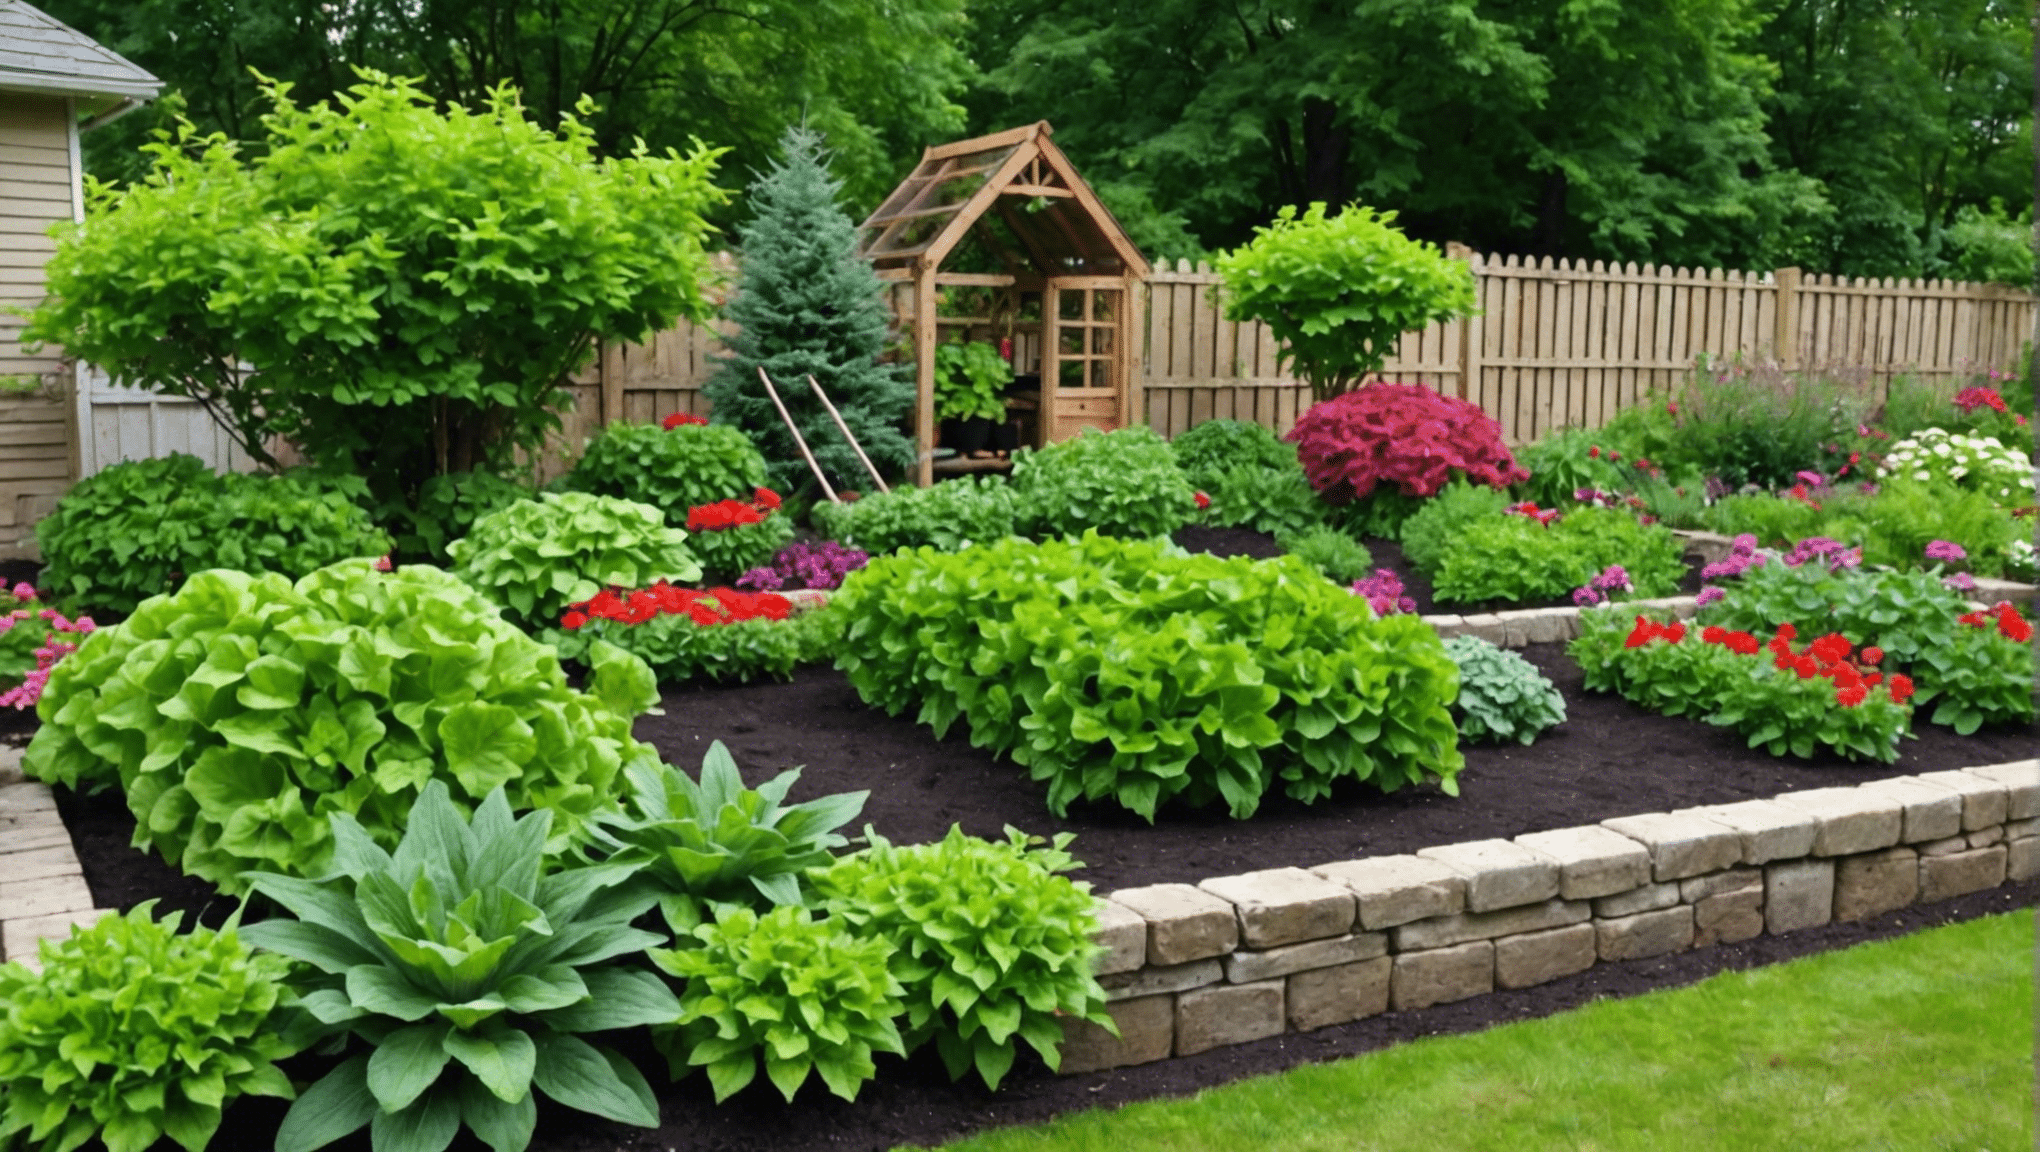 découvrez des conseils pratiques et économiques pour jardiner des légumes dans votre espace grâce à nos idées de jardinage abordables. commencez dès aujourd’hui à créer un potager prospère et économique.